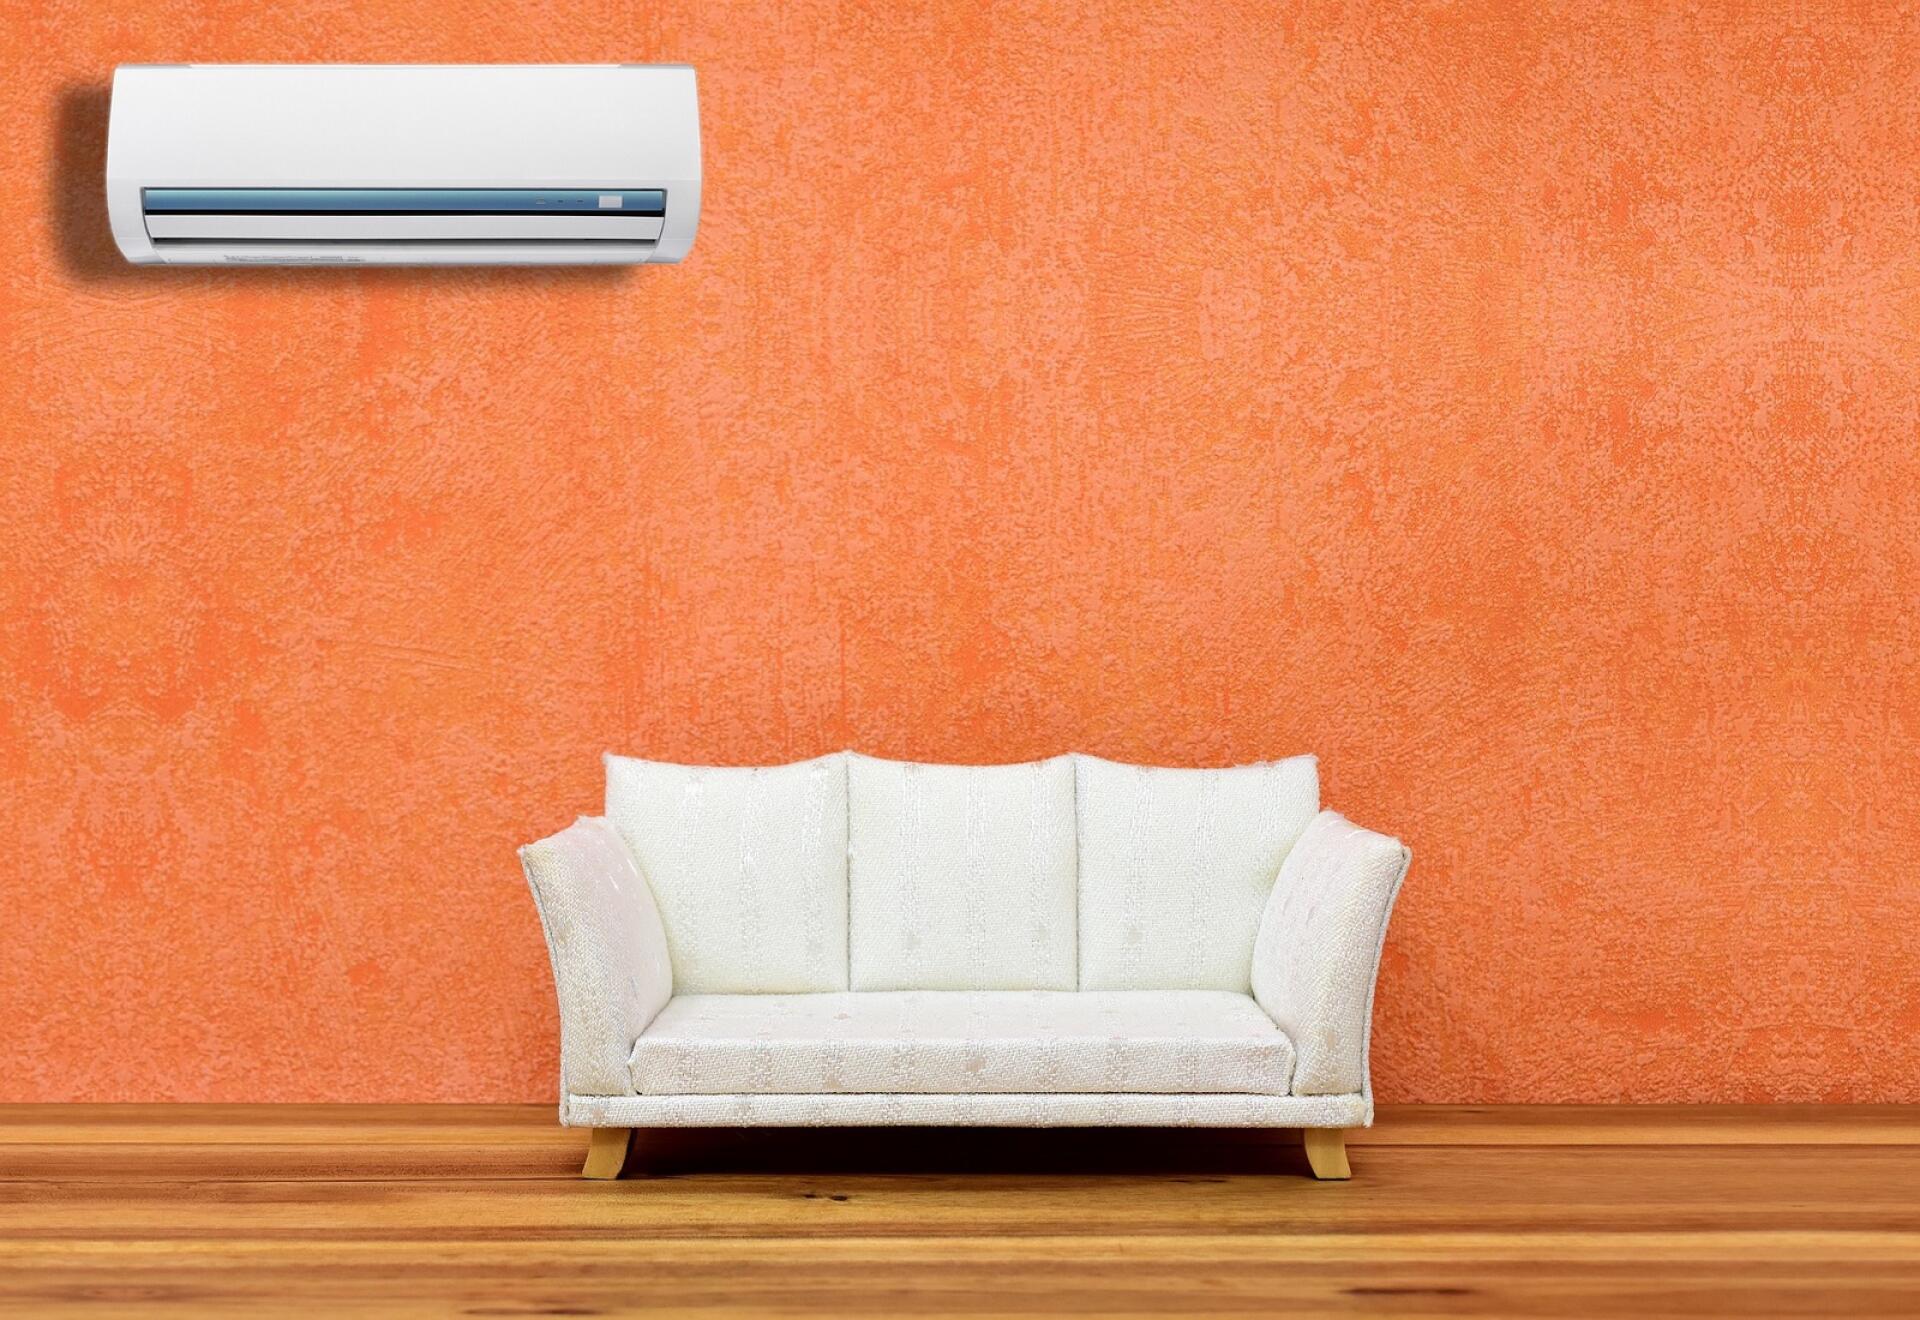 Miten sisällä varmistetaan hyvä ja viileä ilma, kun ulkona on paahtavan  kuumaa? Avuksi tulee ilmastointilaite | Enontekiön Sanomat